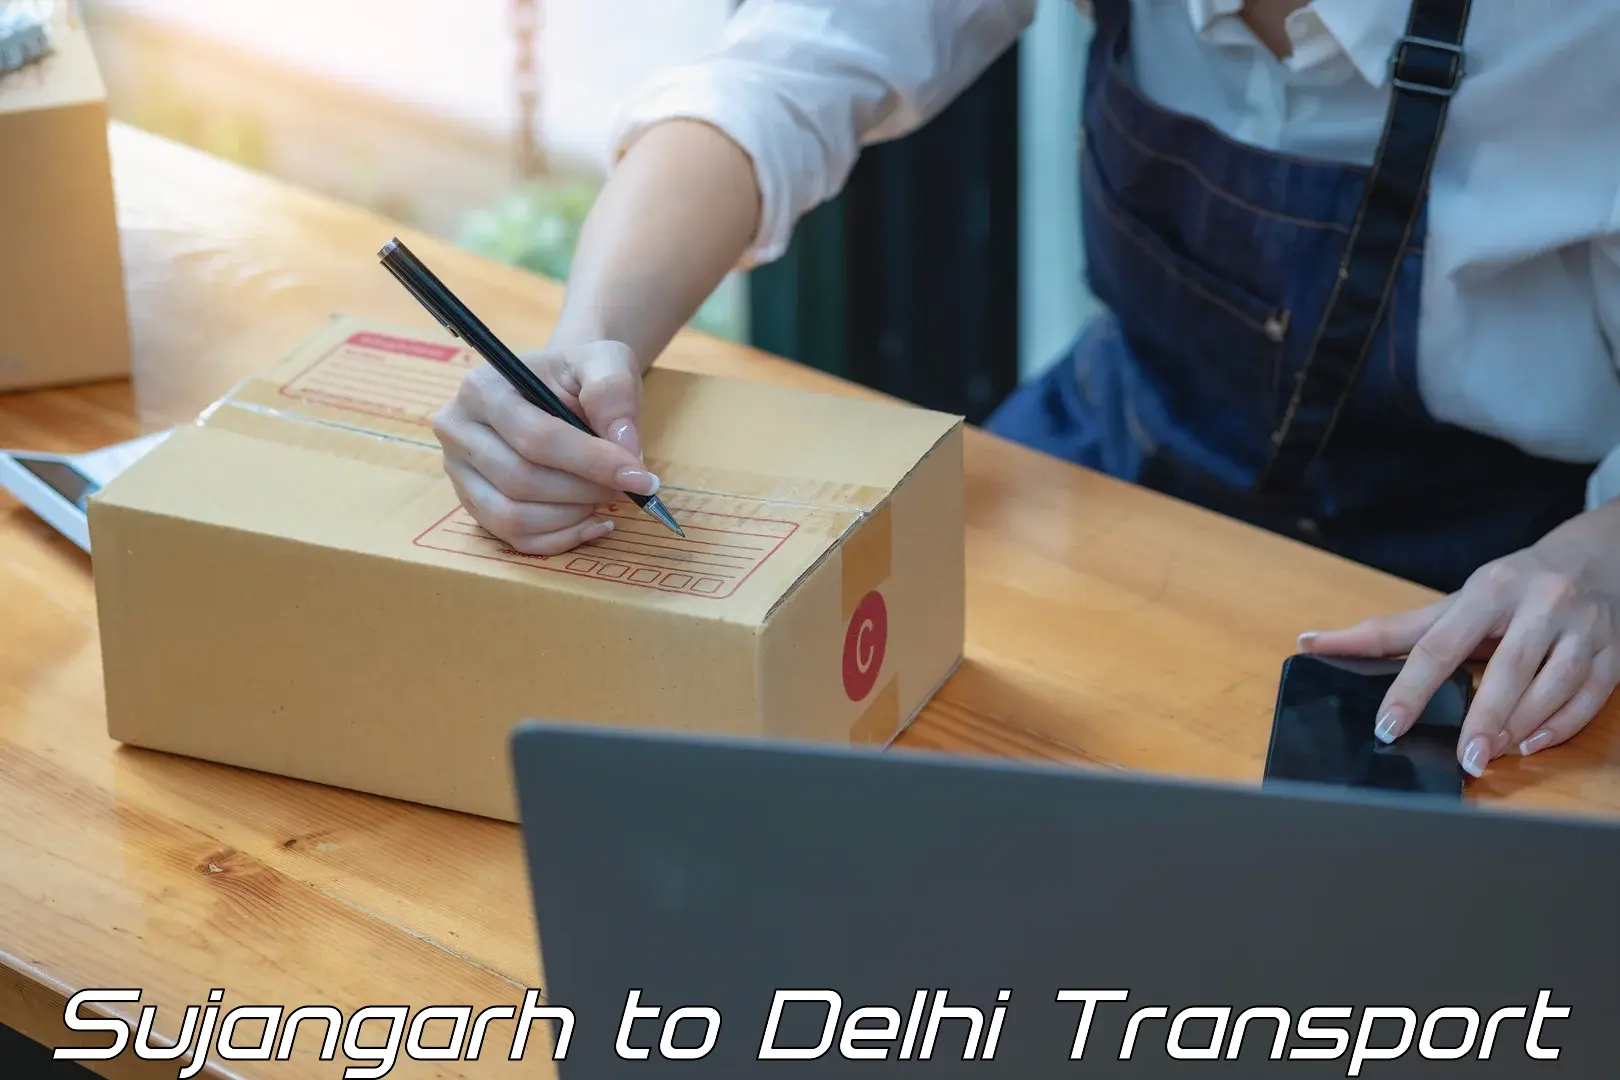 Interstate transport services Sujangarh to Delhi